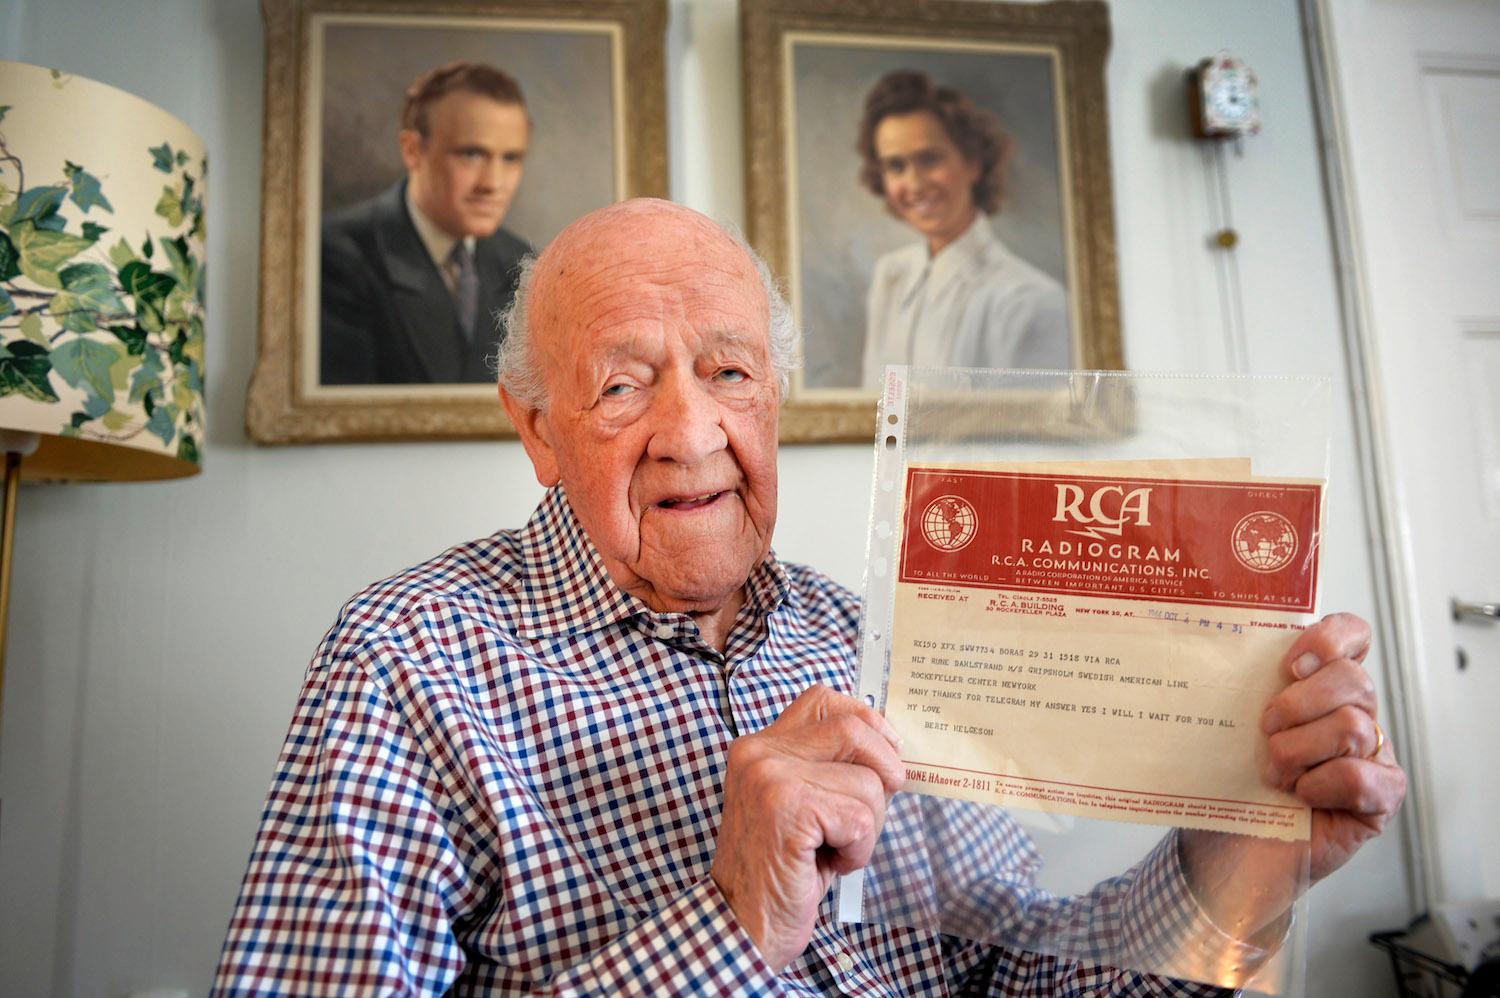 – Vi gjorde en otrolig insats egentligen, men i Sverige är  det ganska okänt, berättar Rune Dahlstrand, 97, som under alla år till sjöss fick brev från sin fästmö Berit.
Han har också skrivit en bok och är ute och föreläser om sina äventyr.